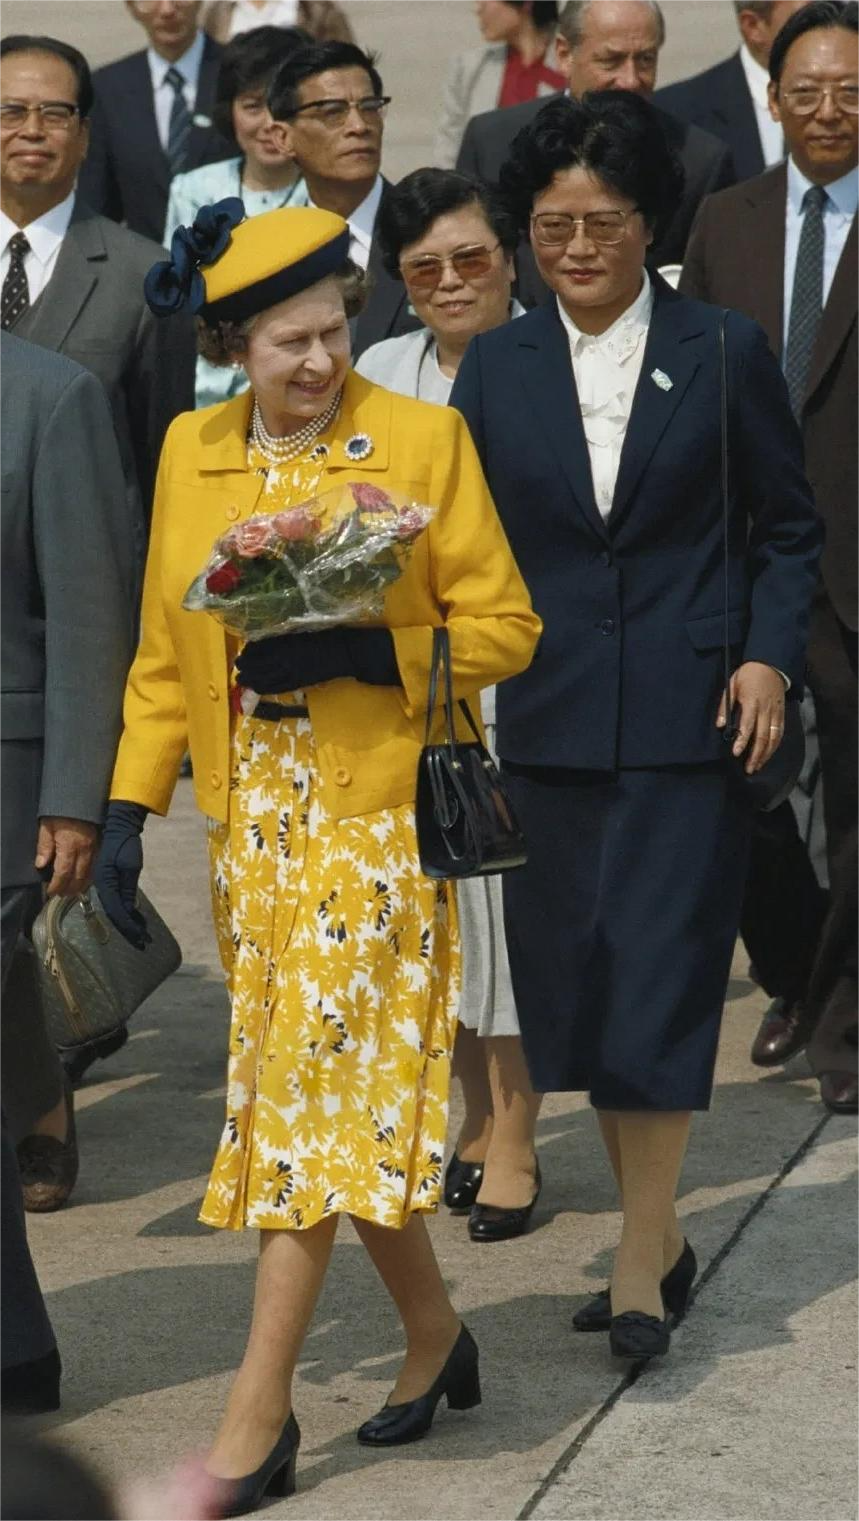 伊丽莎白二世访华1986图片